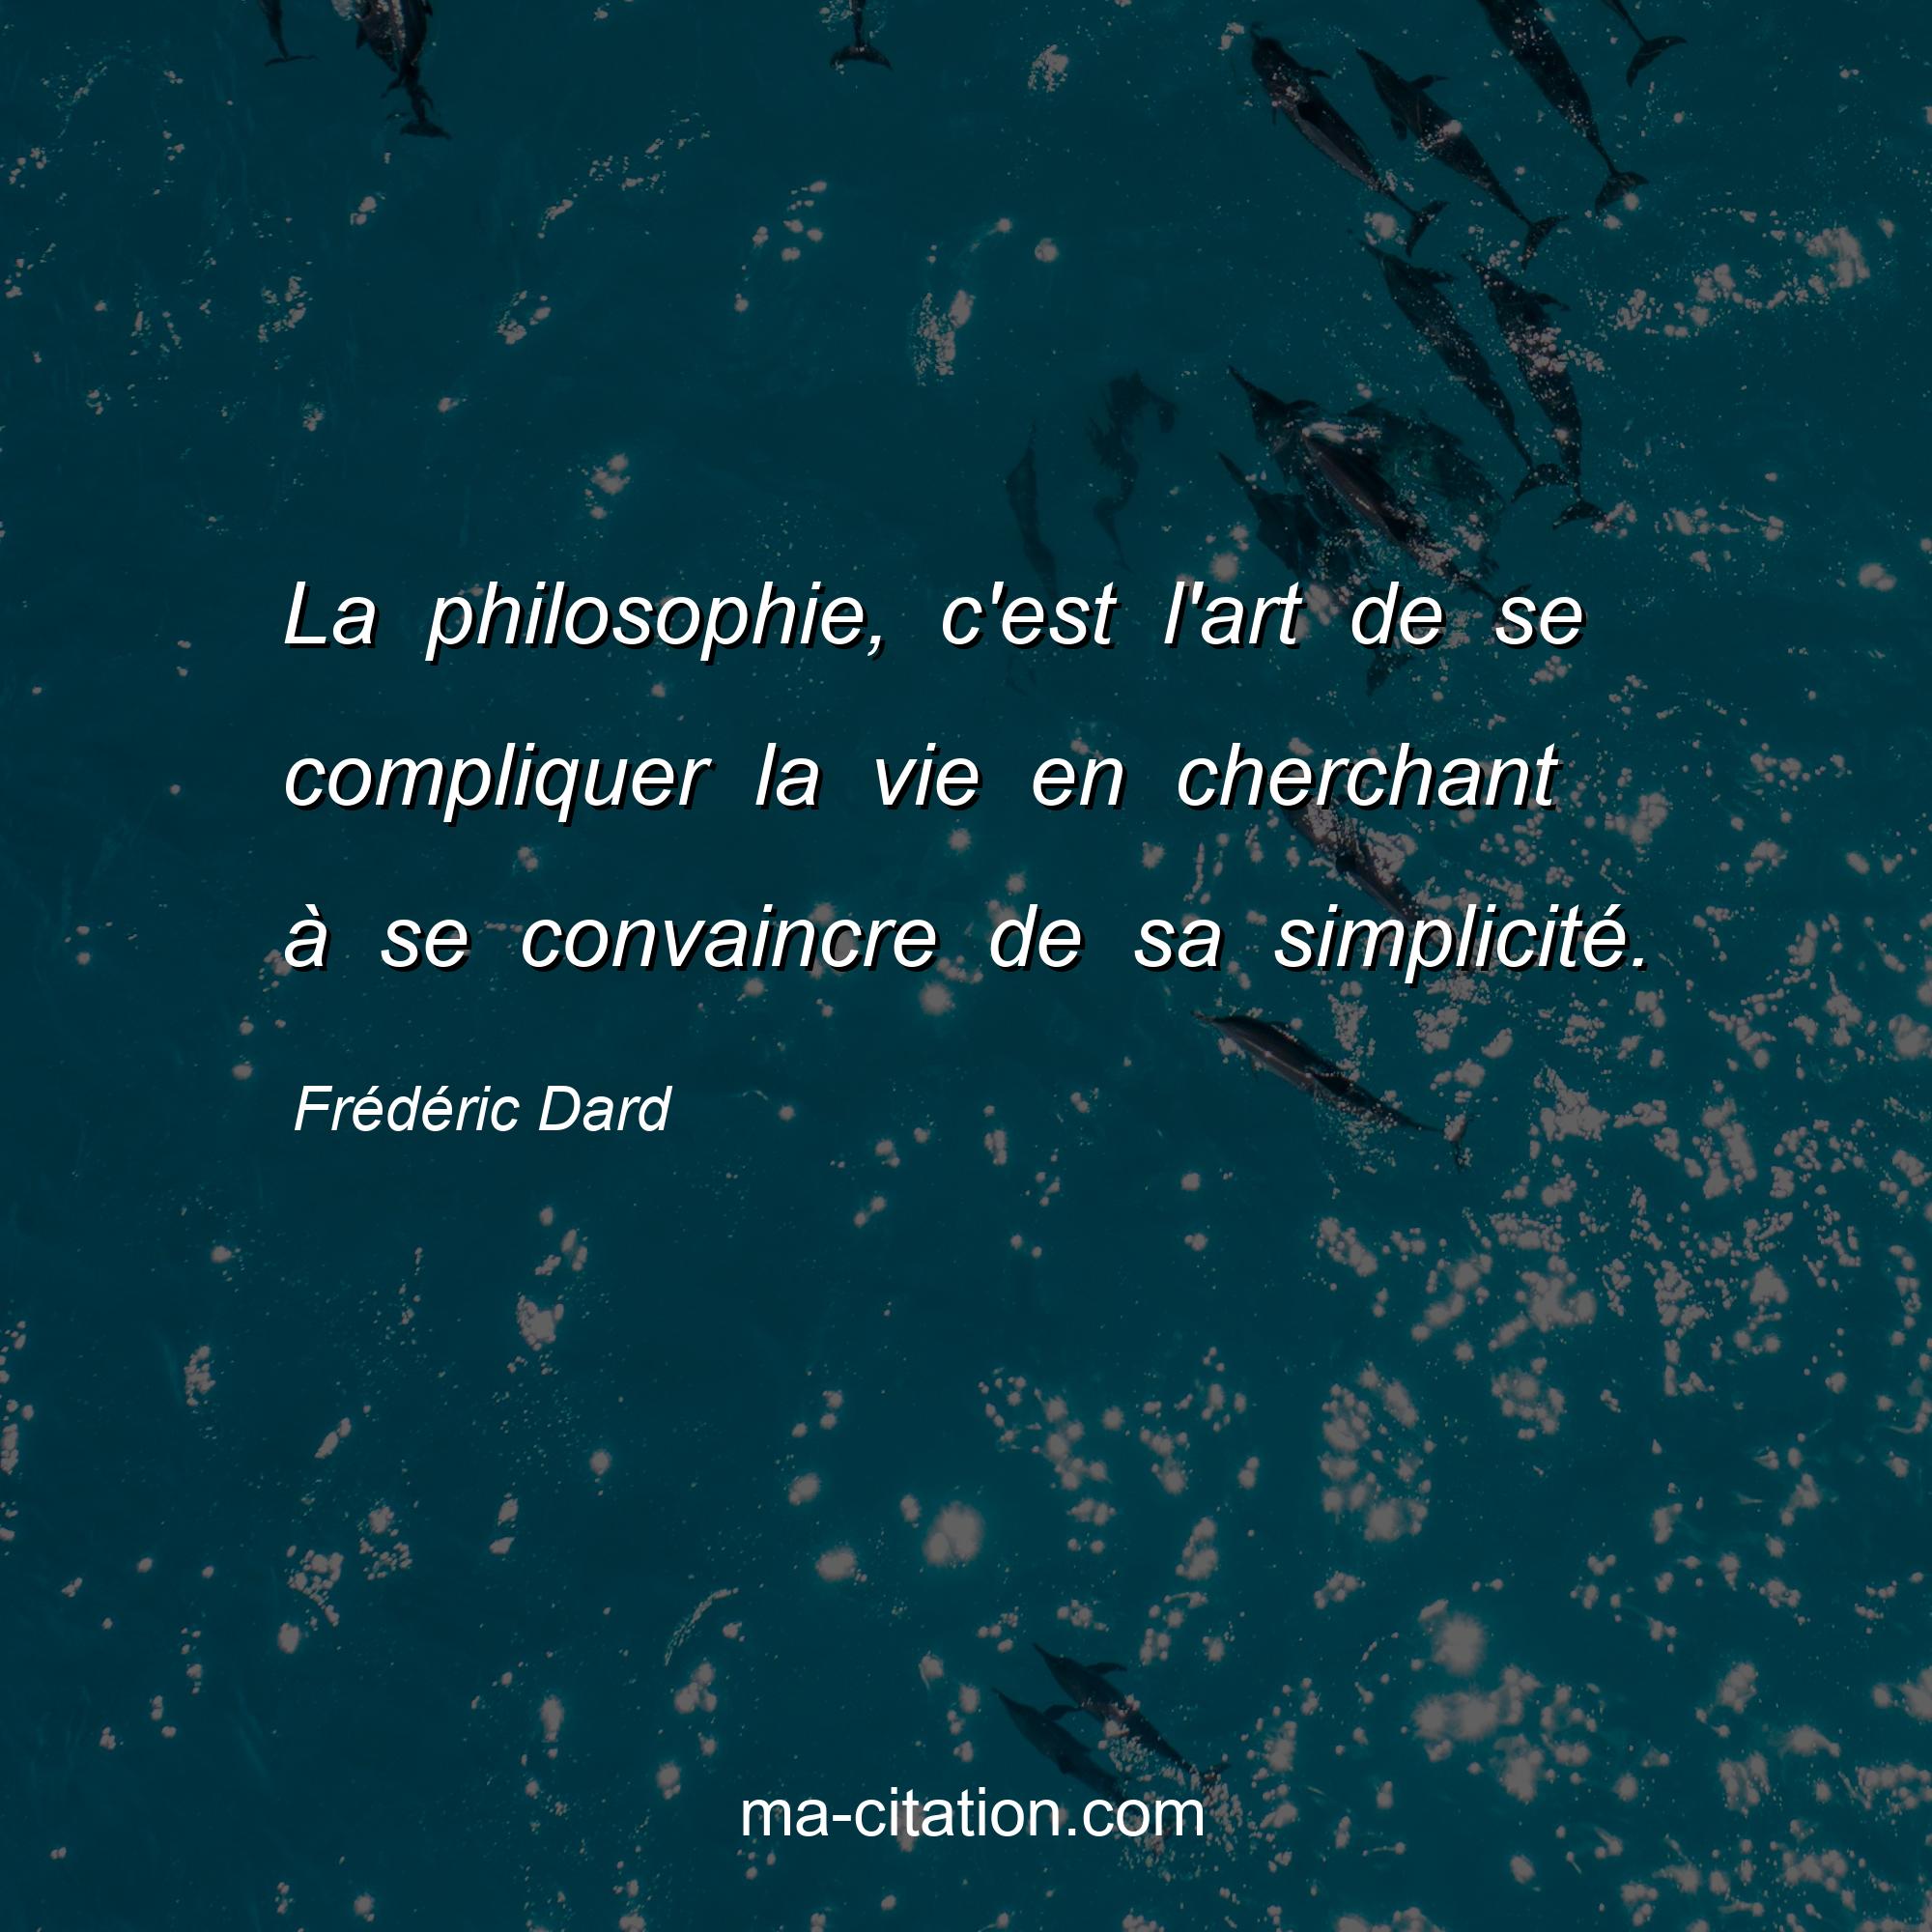 Frédéric Dard : La philosophie, c'est l'art de se compliquer la vie en cherchant à se convaincre de sa simplicité.